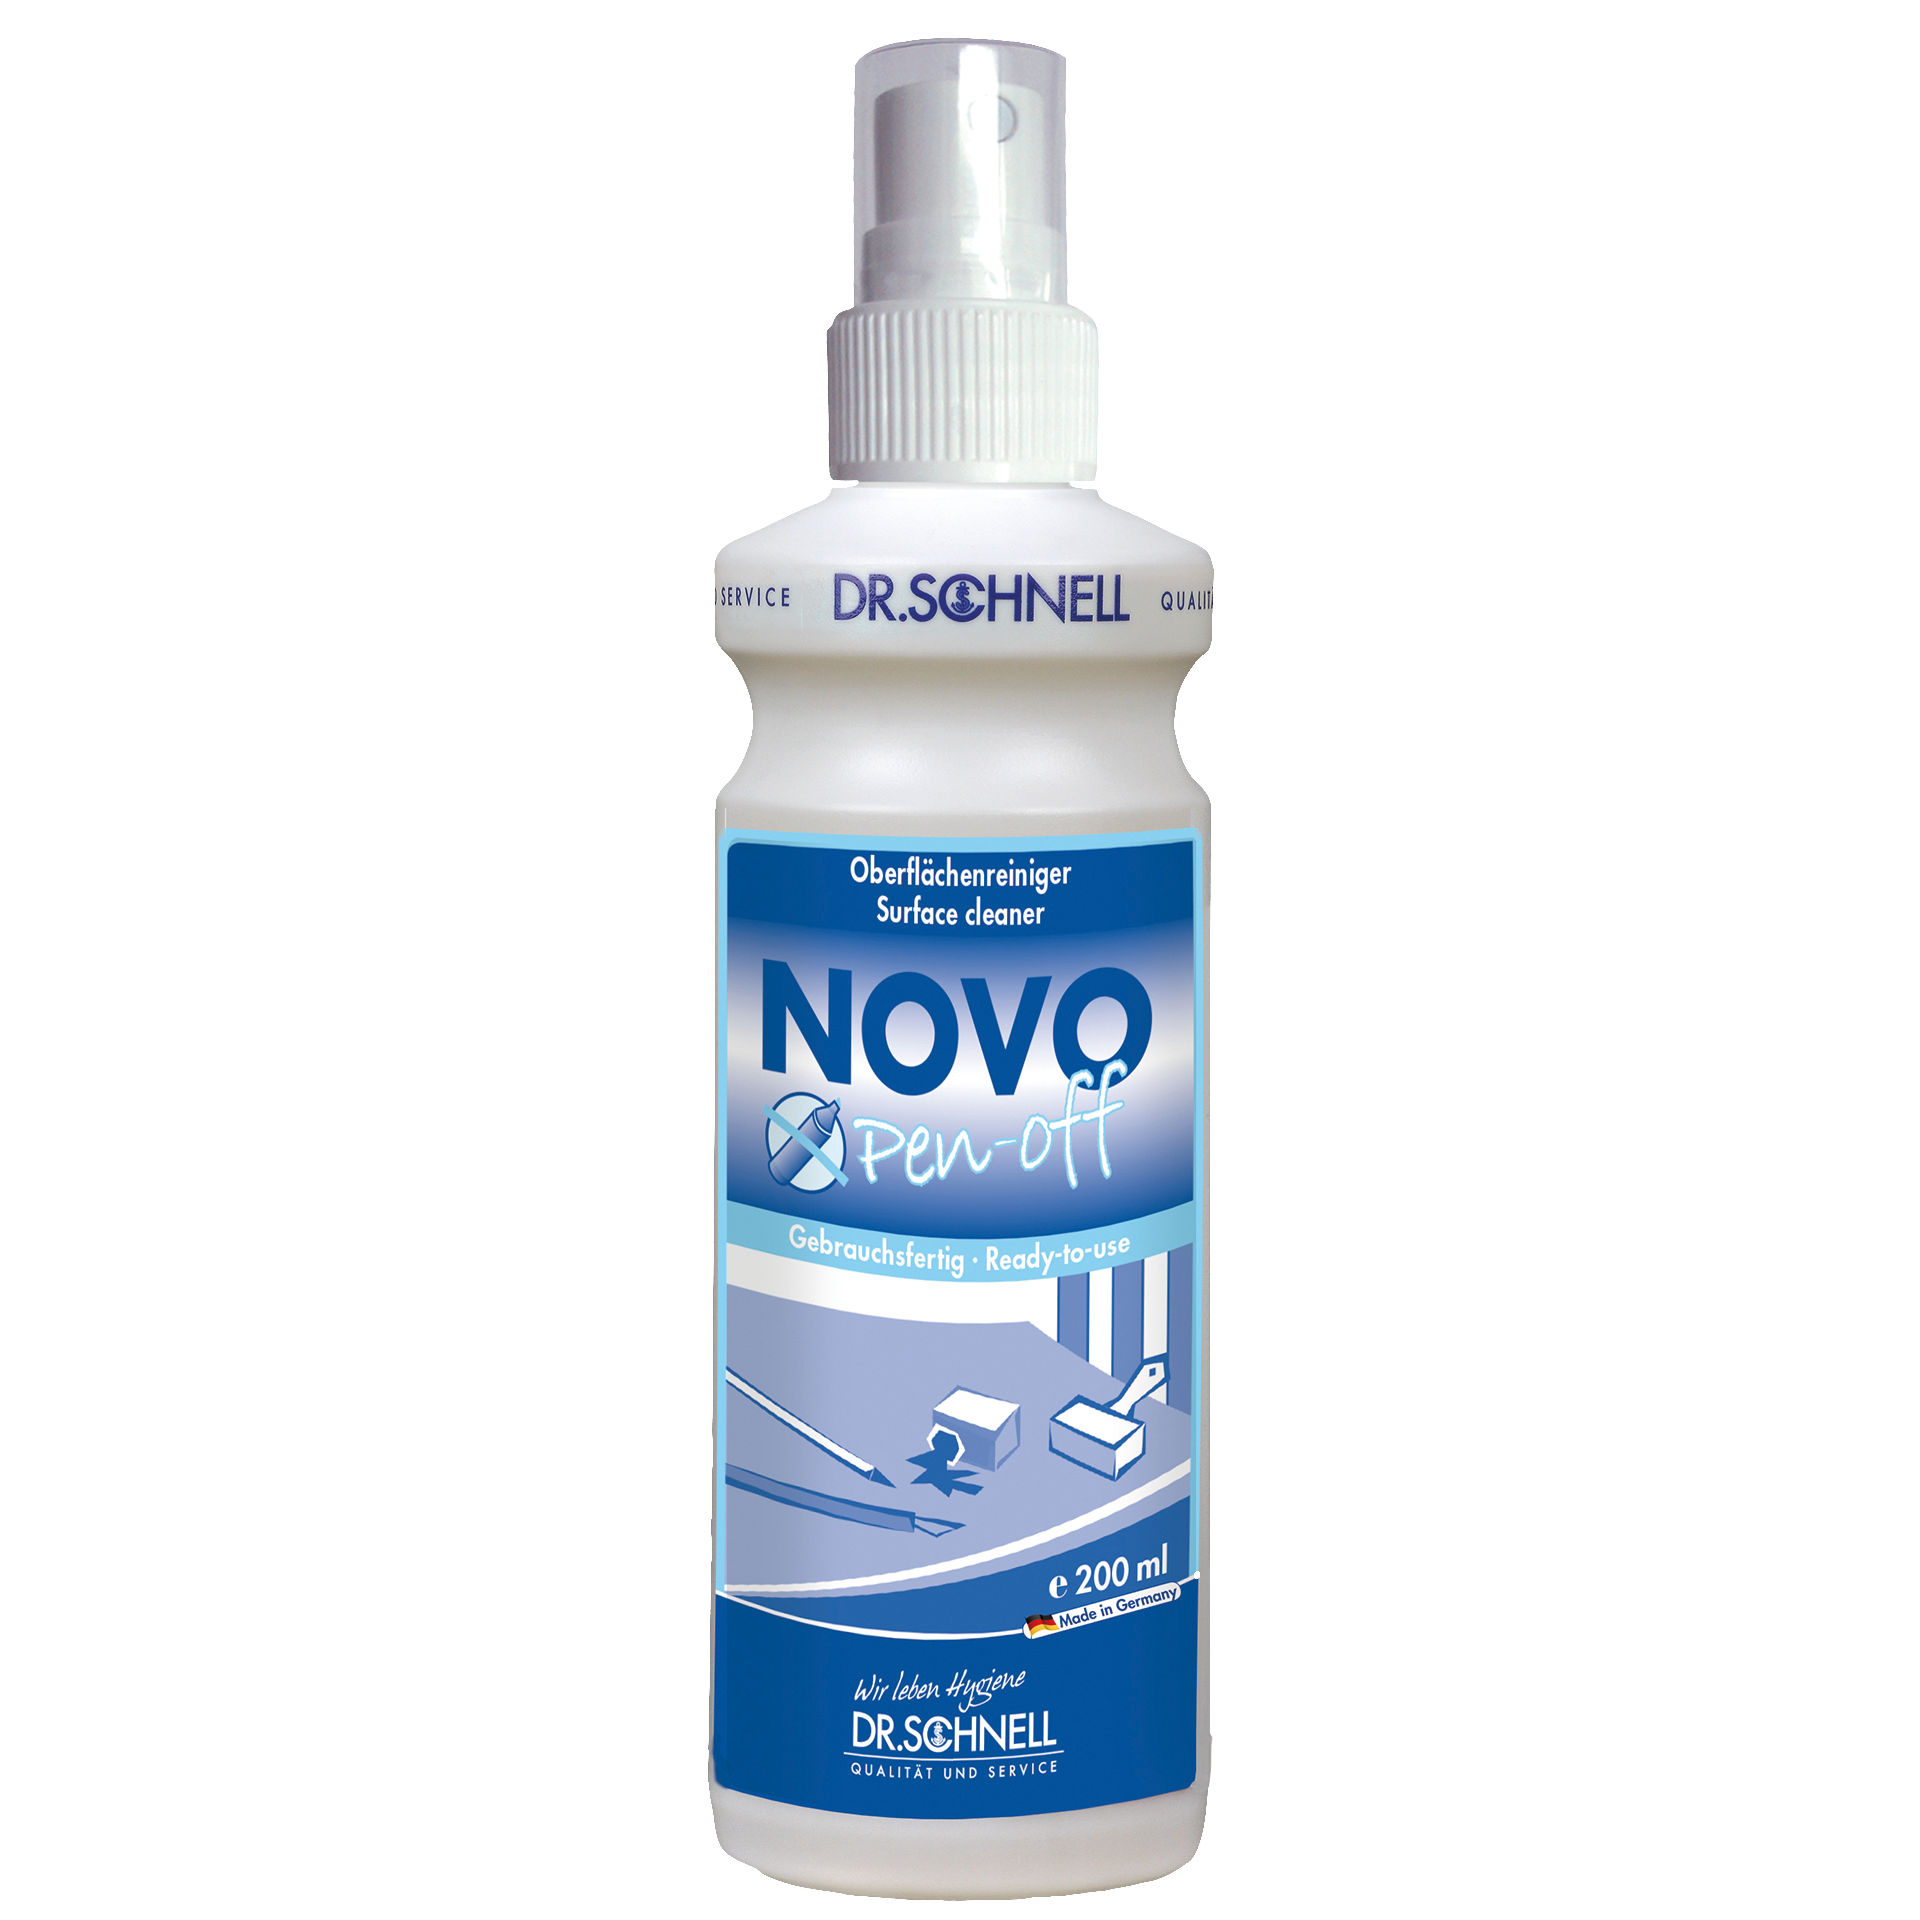 Dr. Schnell NOVO Pen-off Spezial-Oberflächenreiniger, 500 ml Flasche mit Sprühaufsatz